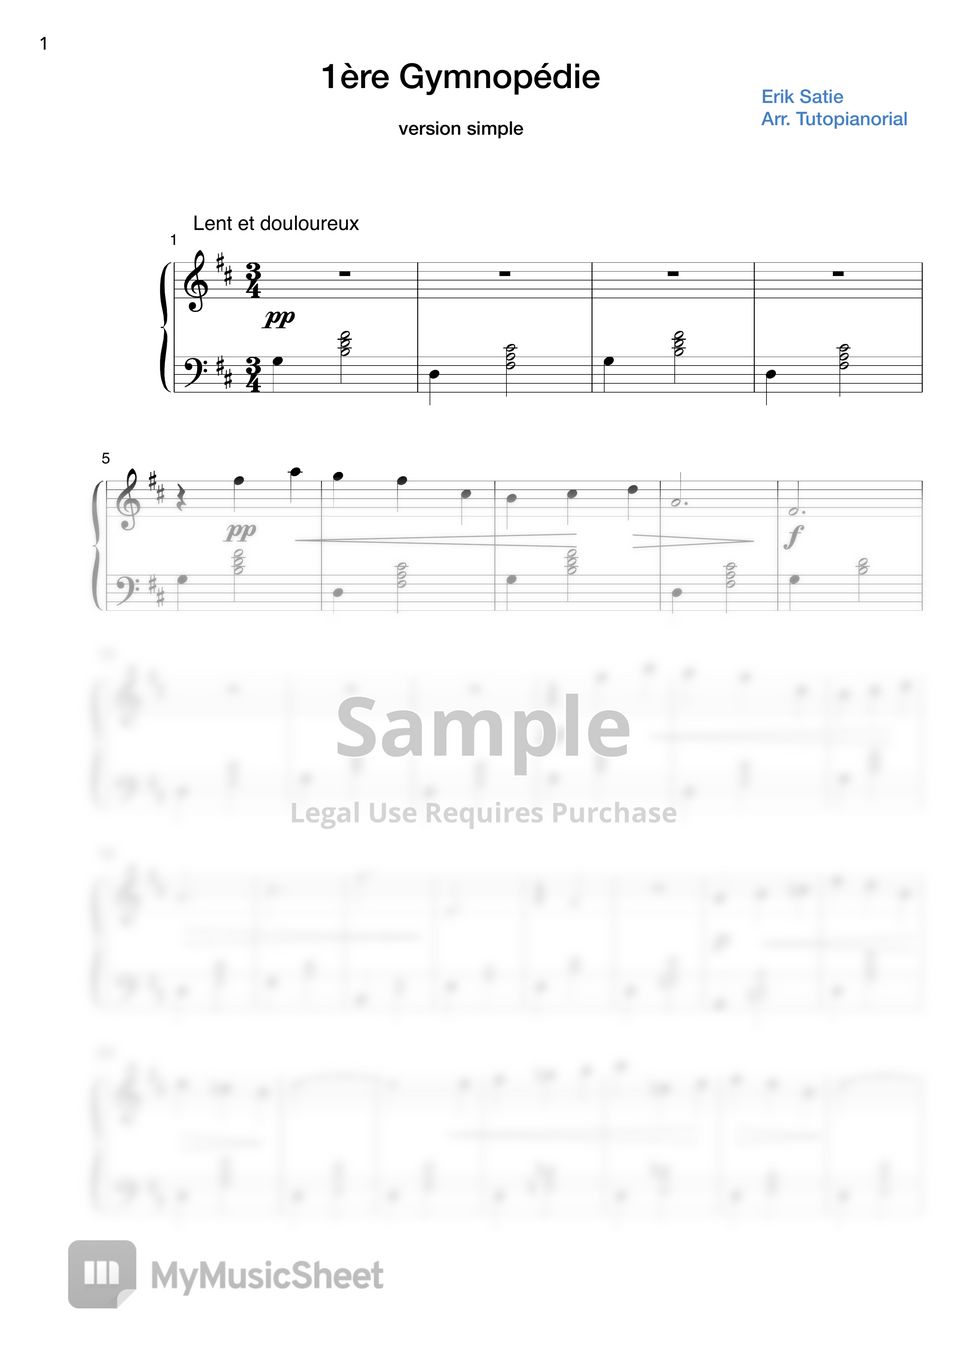 Erik Satie - Gymnopédie No.1 version simple (original inclus) Sheets by ...